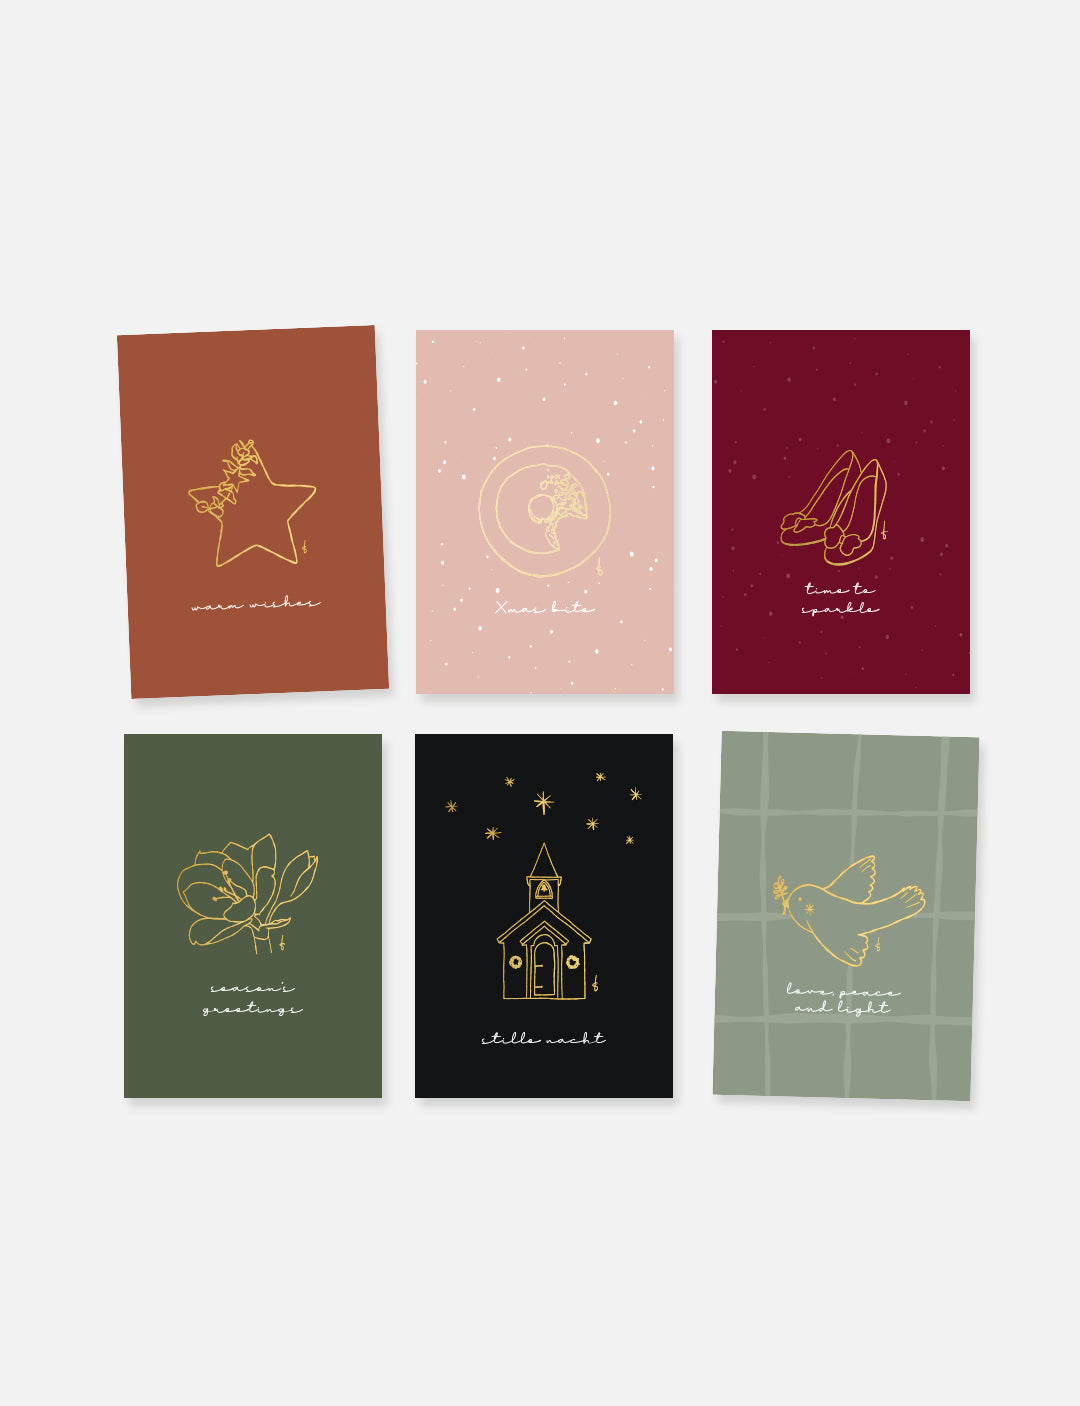 Ansichtkaart (A6) met minimalistische handgetekende illustratie van feestelijke hakschoentjes in goudfolie op een achtergrond in warme kleurstelling. Deze minimalistische kerstkaart maakt onderdeel uit van een kaartenset met leuke kerstkaarten.